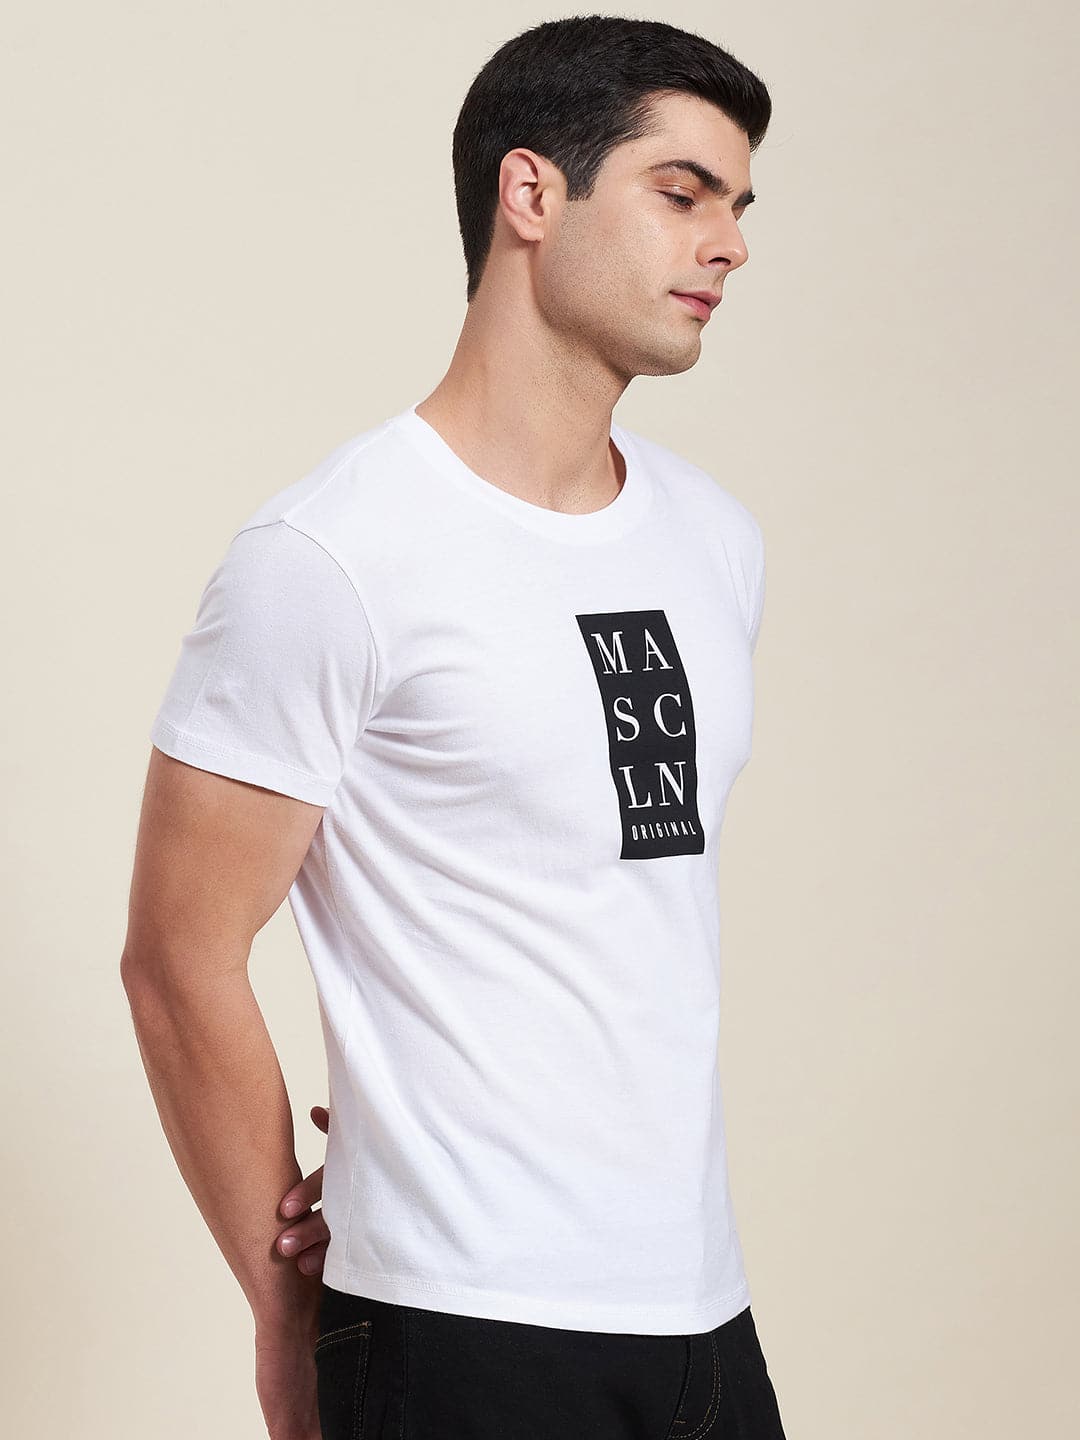 Buy Lyush - Mascln Men's White Vertical Slim Fit T-Shirt Online at Best  Price